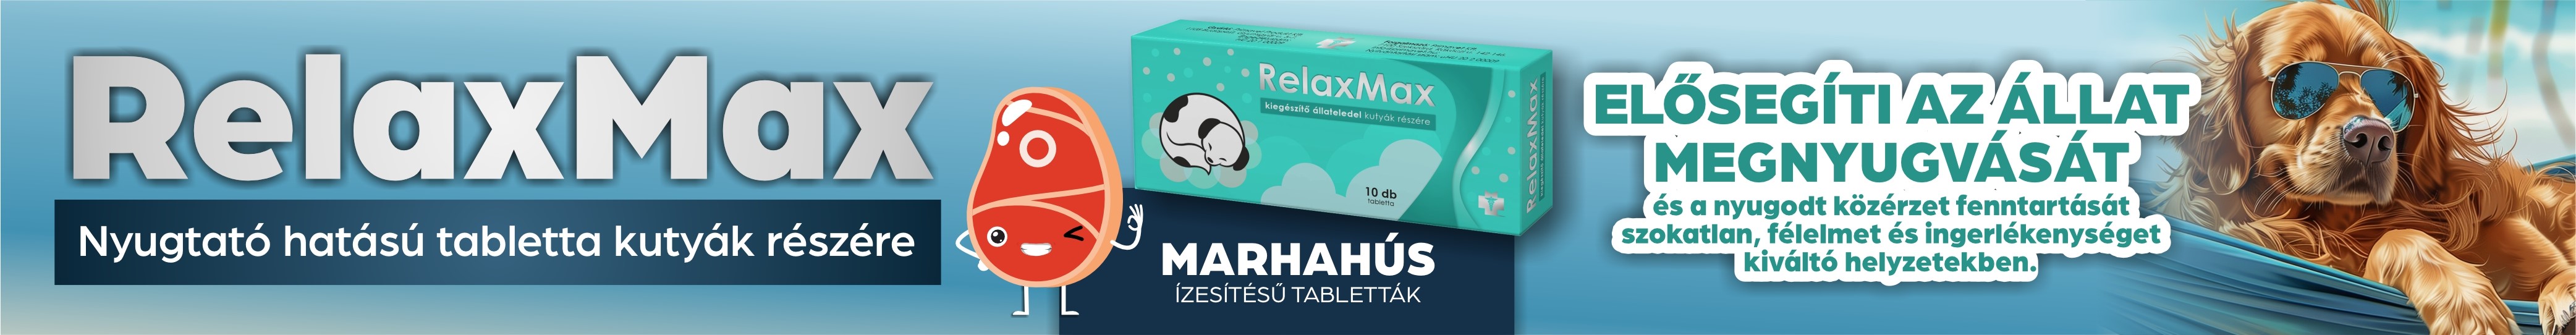 RelaxMax - Nyugtató hatású tabletta kutyák részére